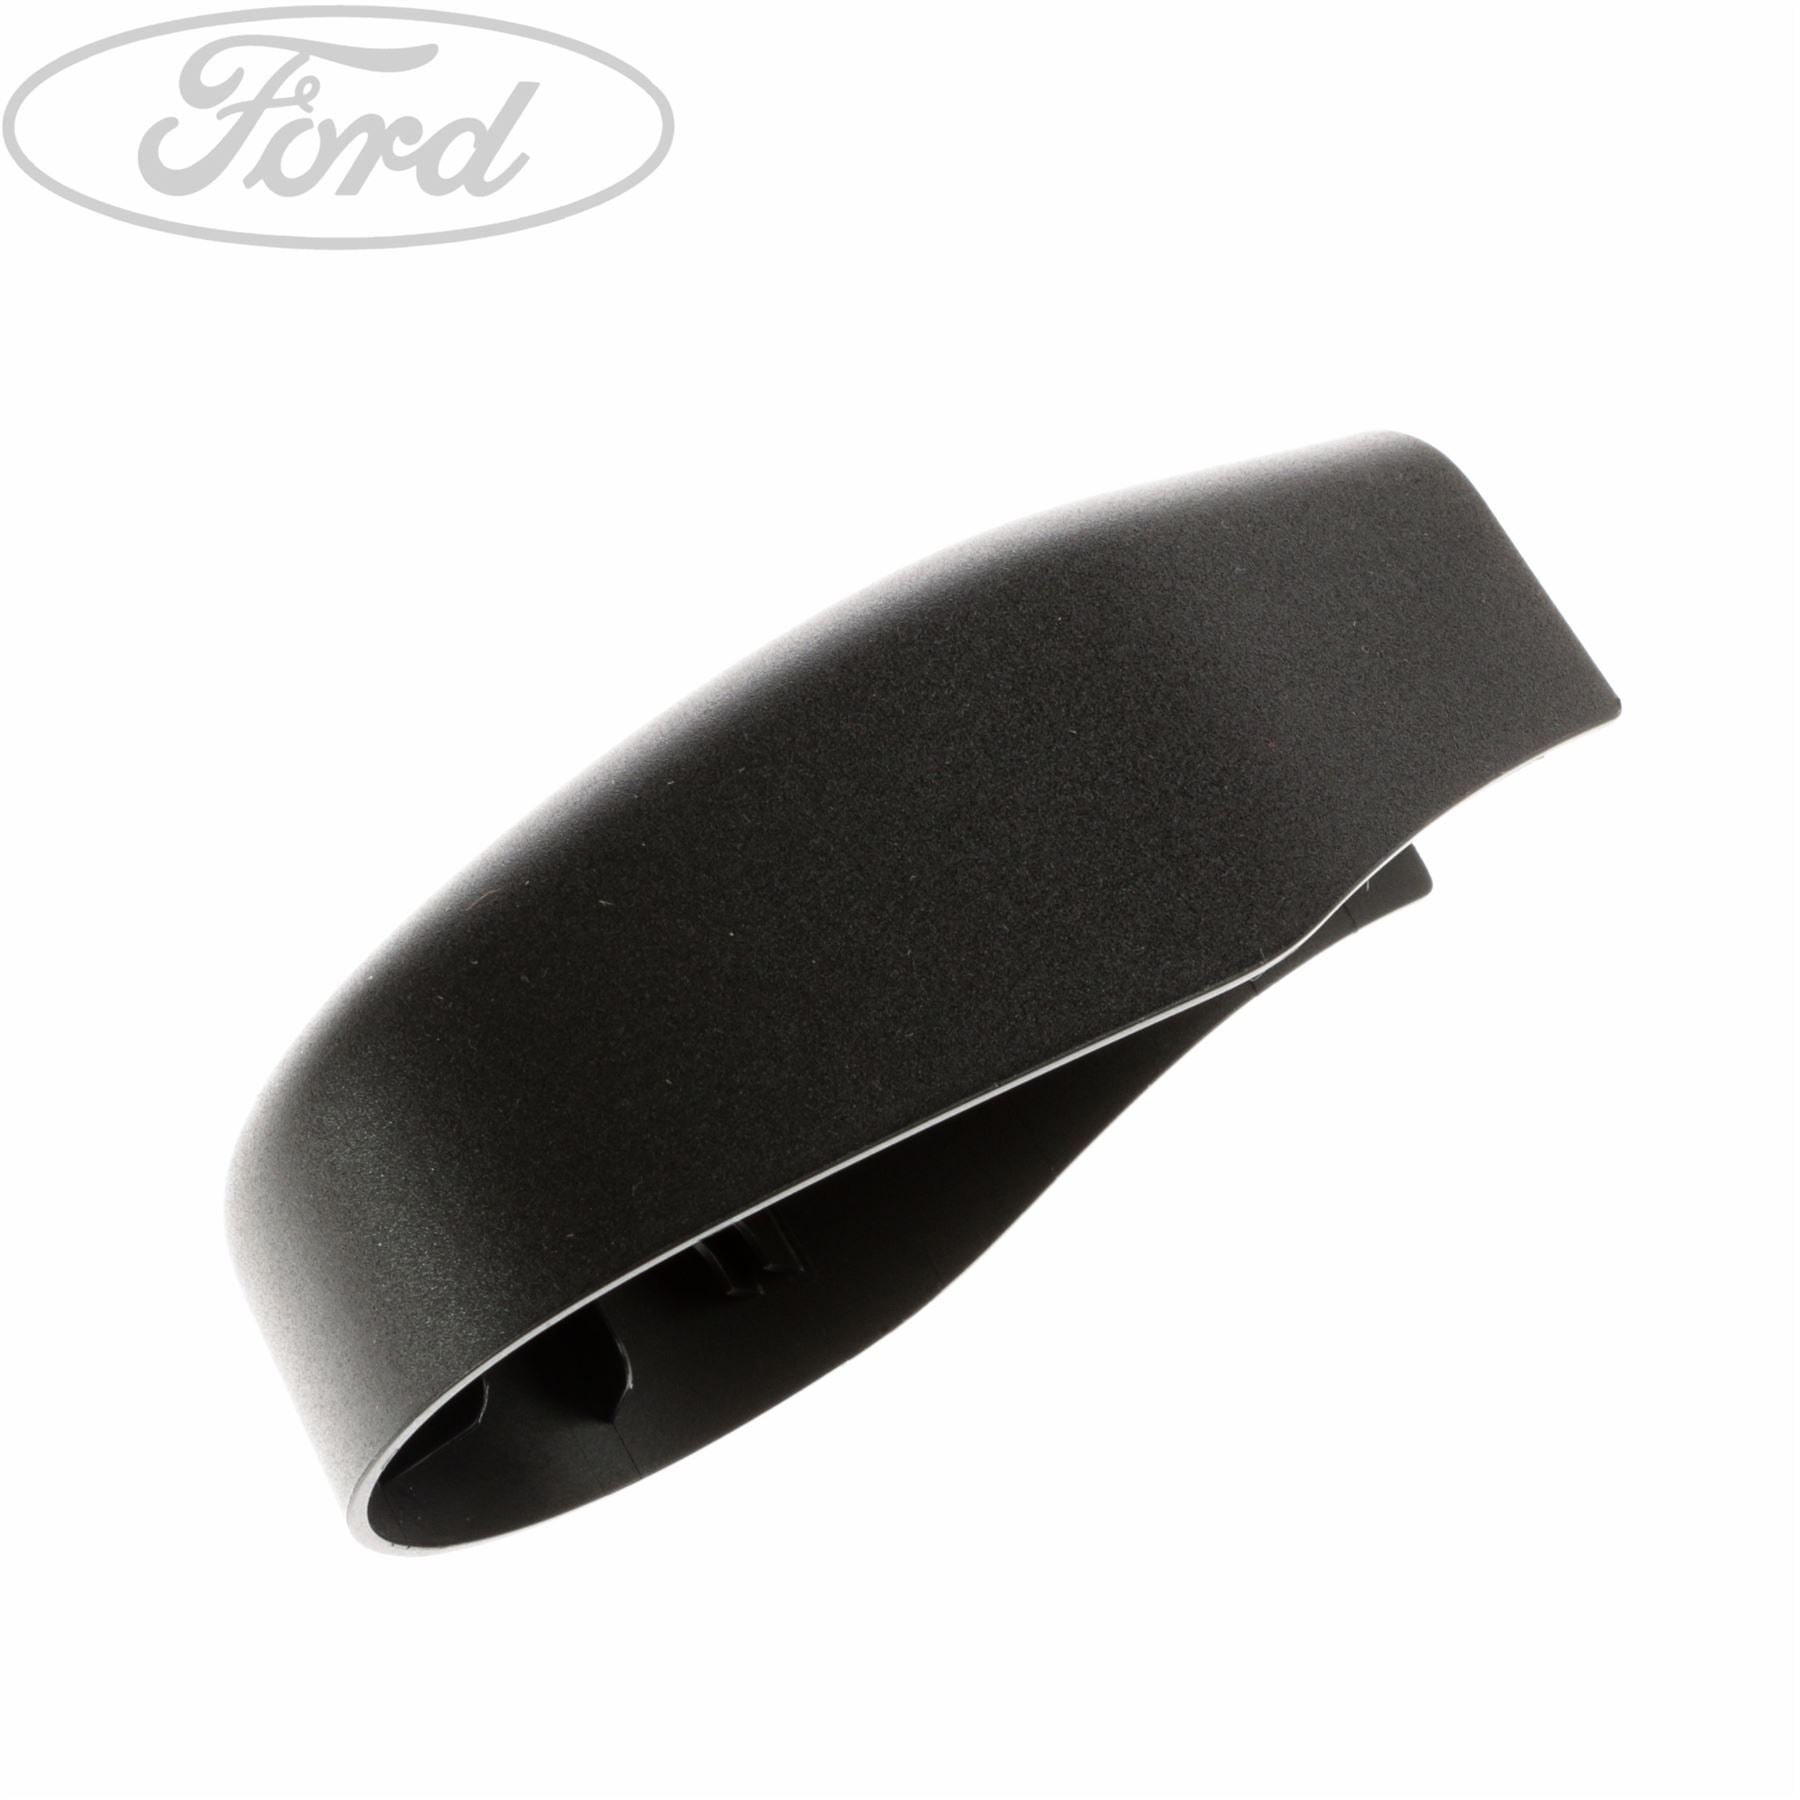 Ford WIPER ARM CAP - 1718652